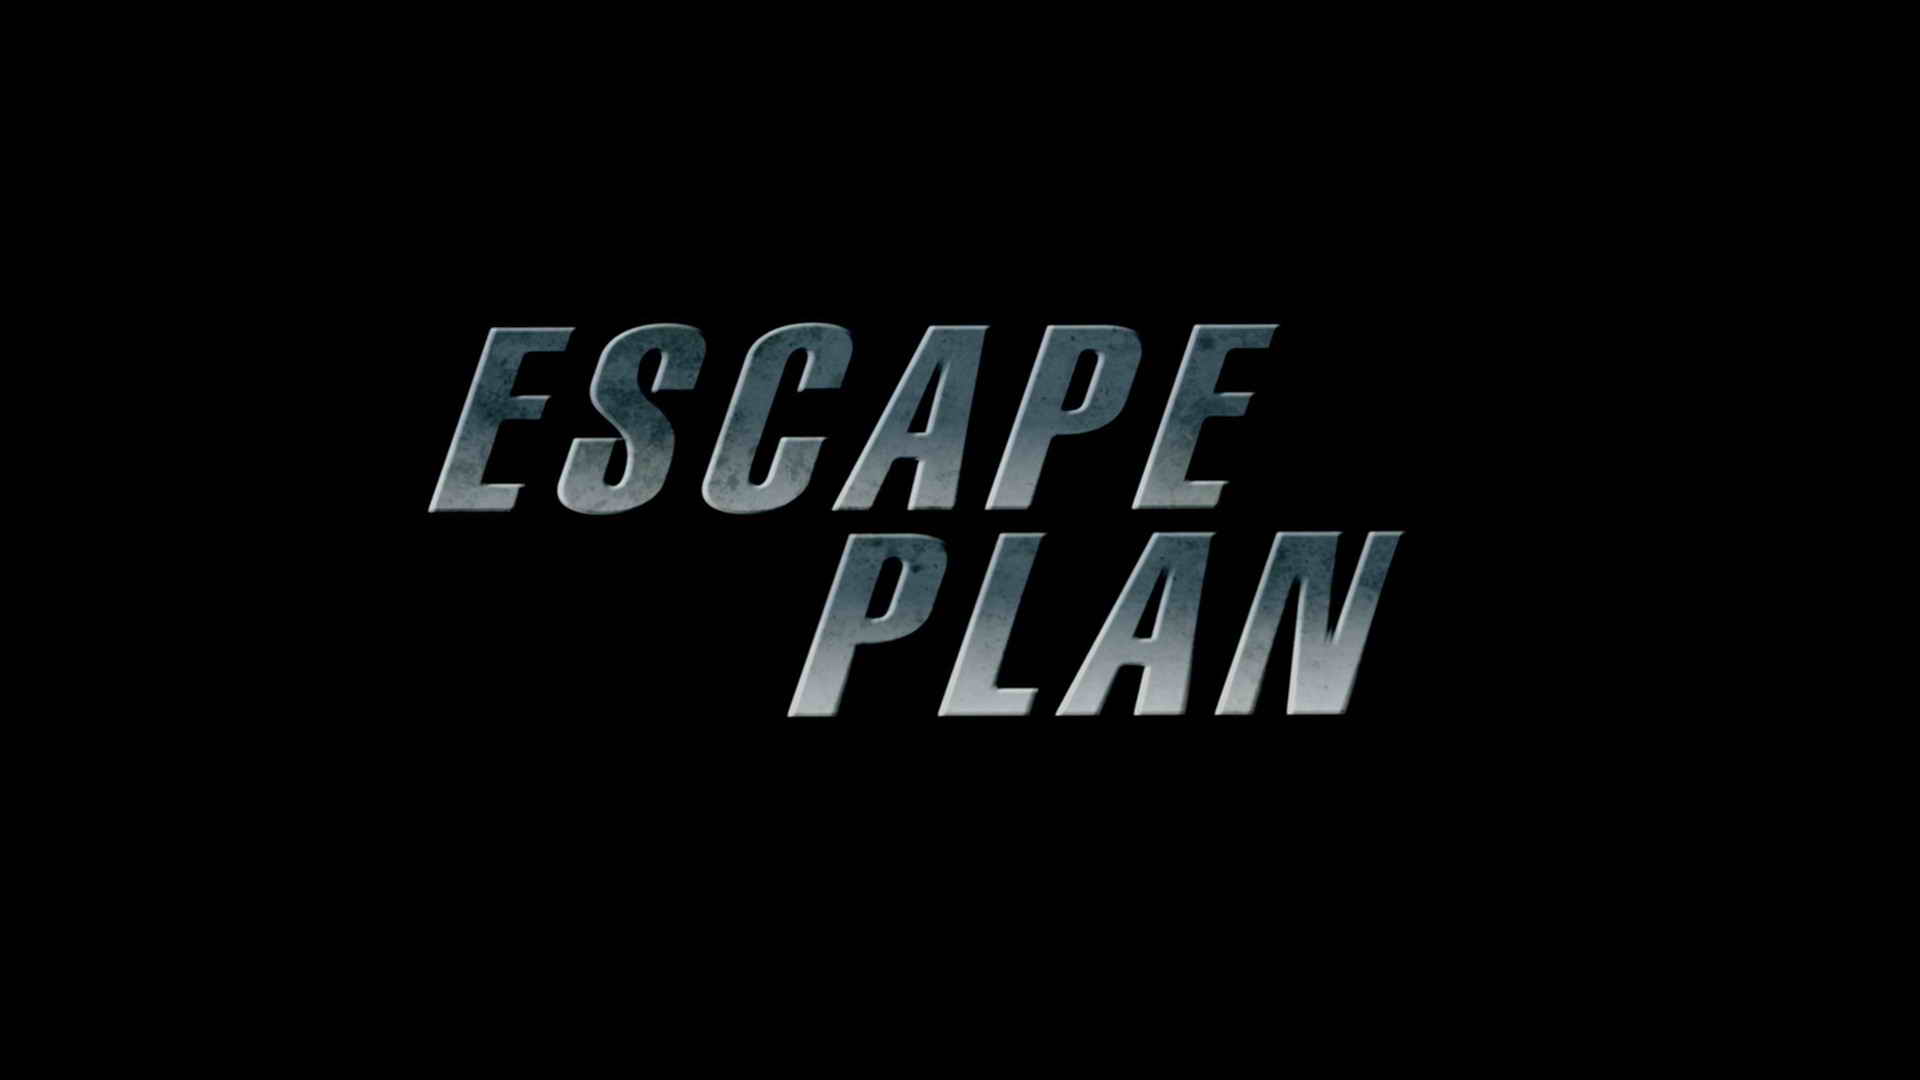 Titelbildschirm vom Film Escape Plan